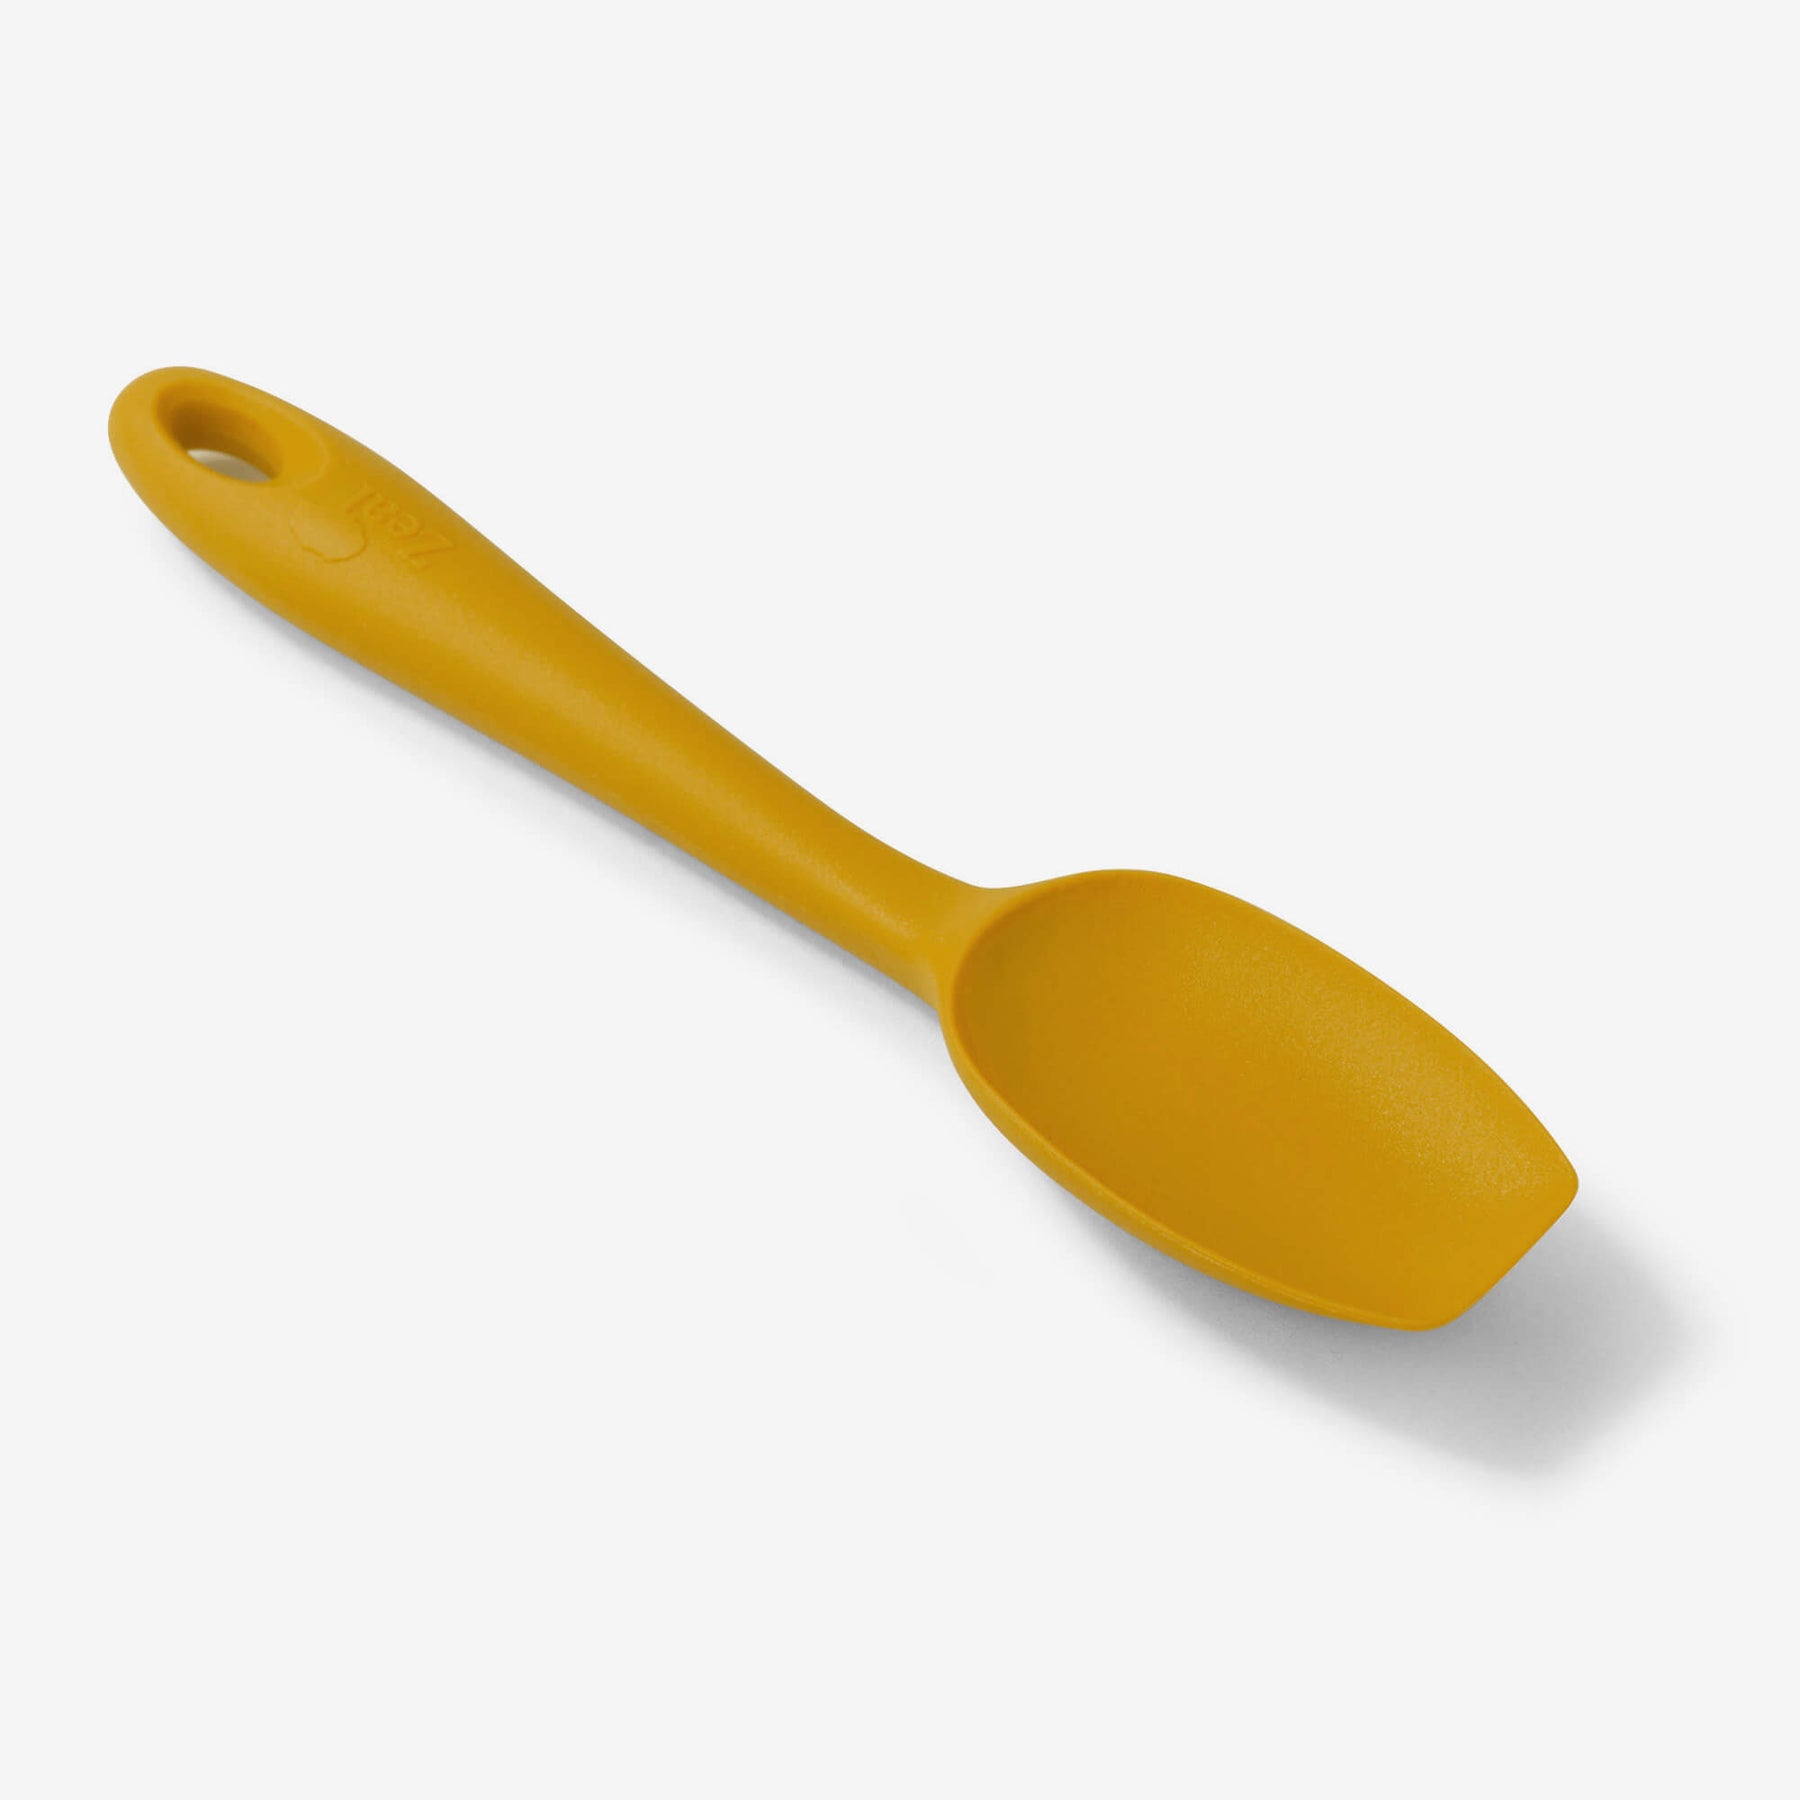 Silicone Spatula Spoon, 20cm